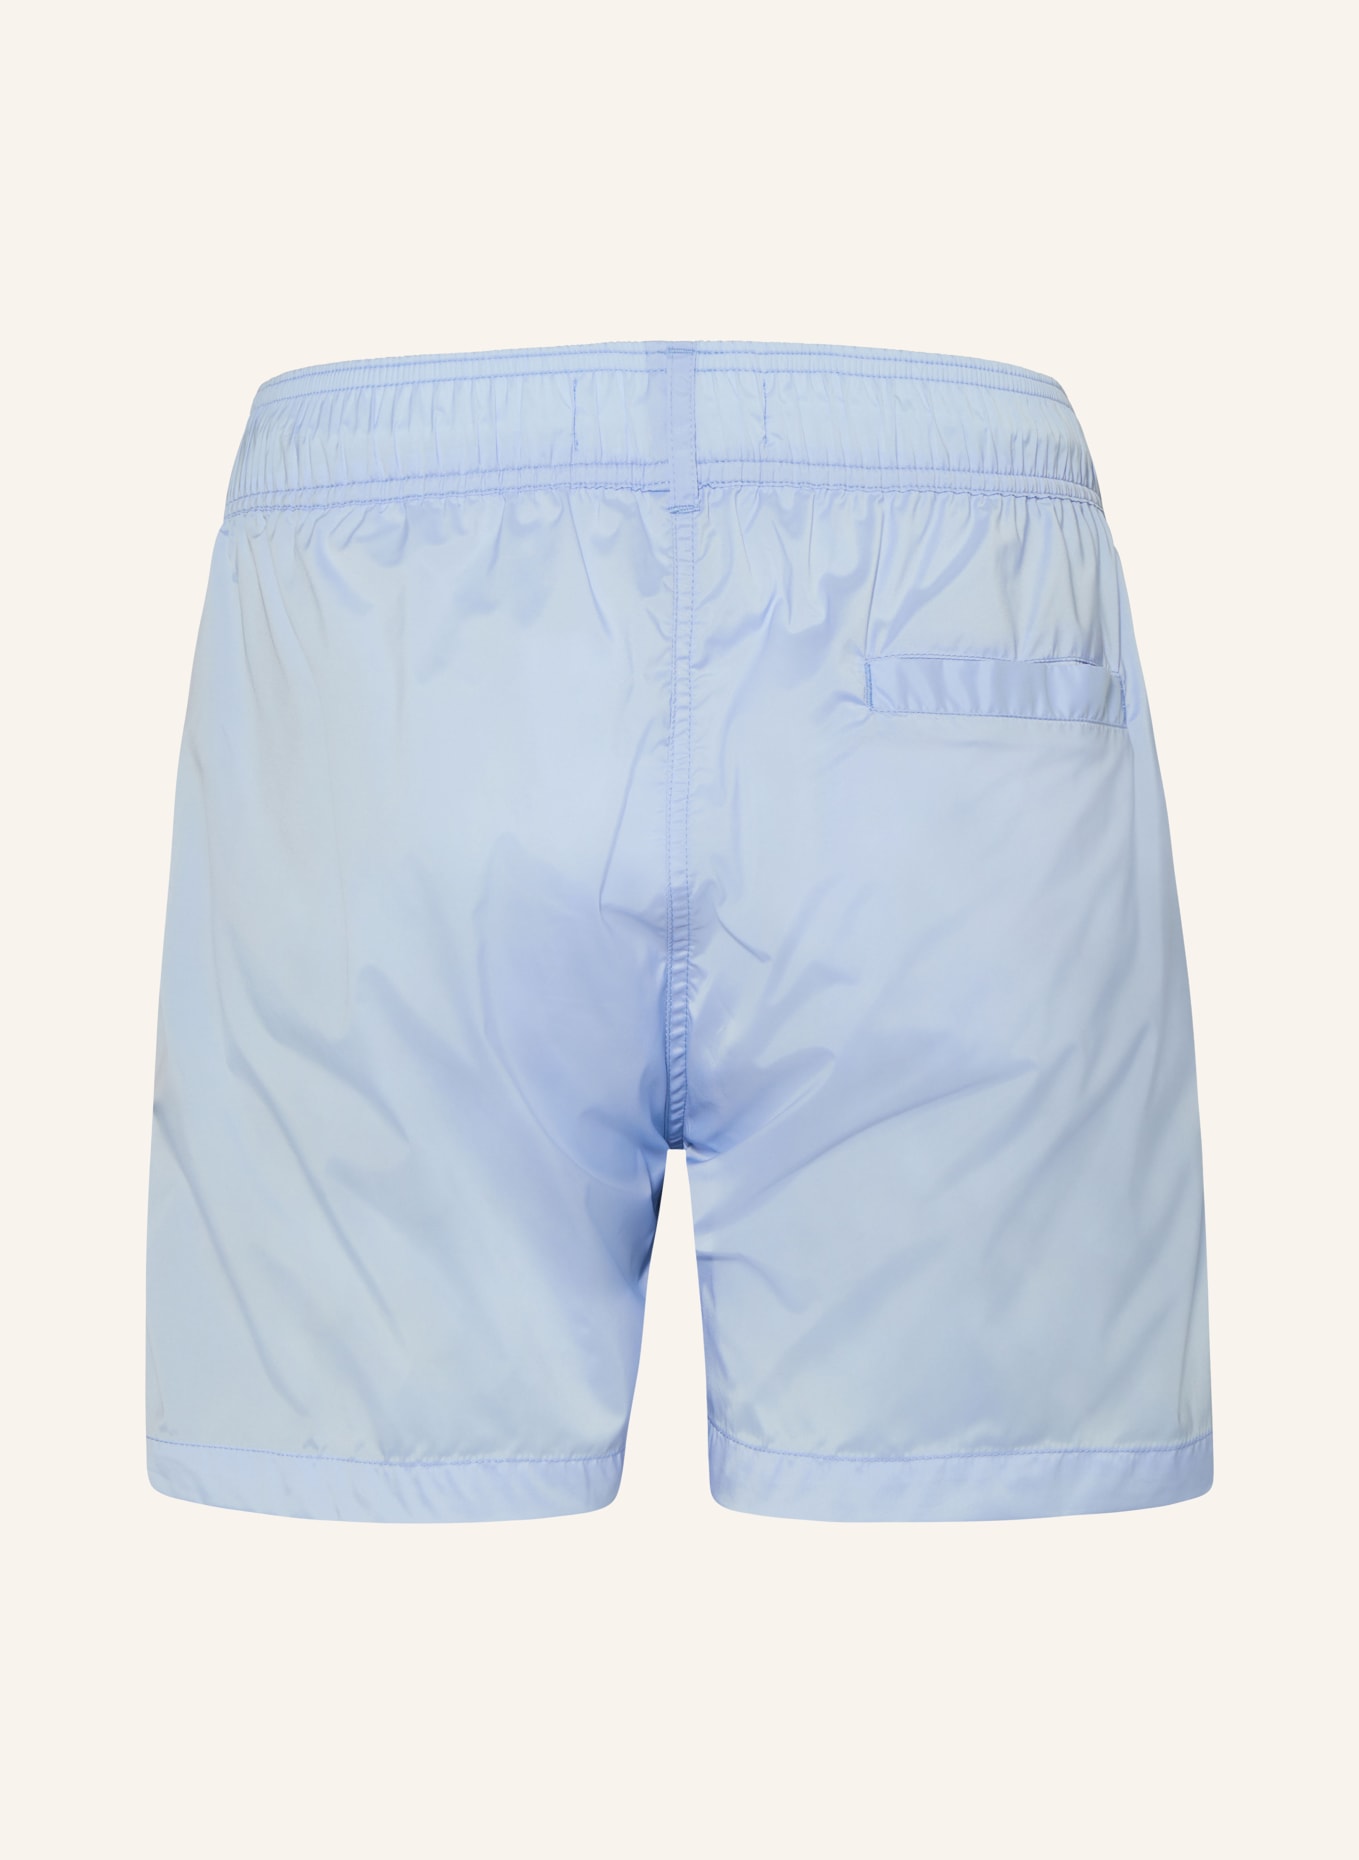 FRESCOBOL CARIOCA Swim shorts SALVADOR, Color: LIGHT BLUE (Image 2)